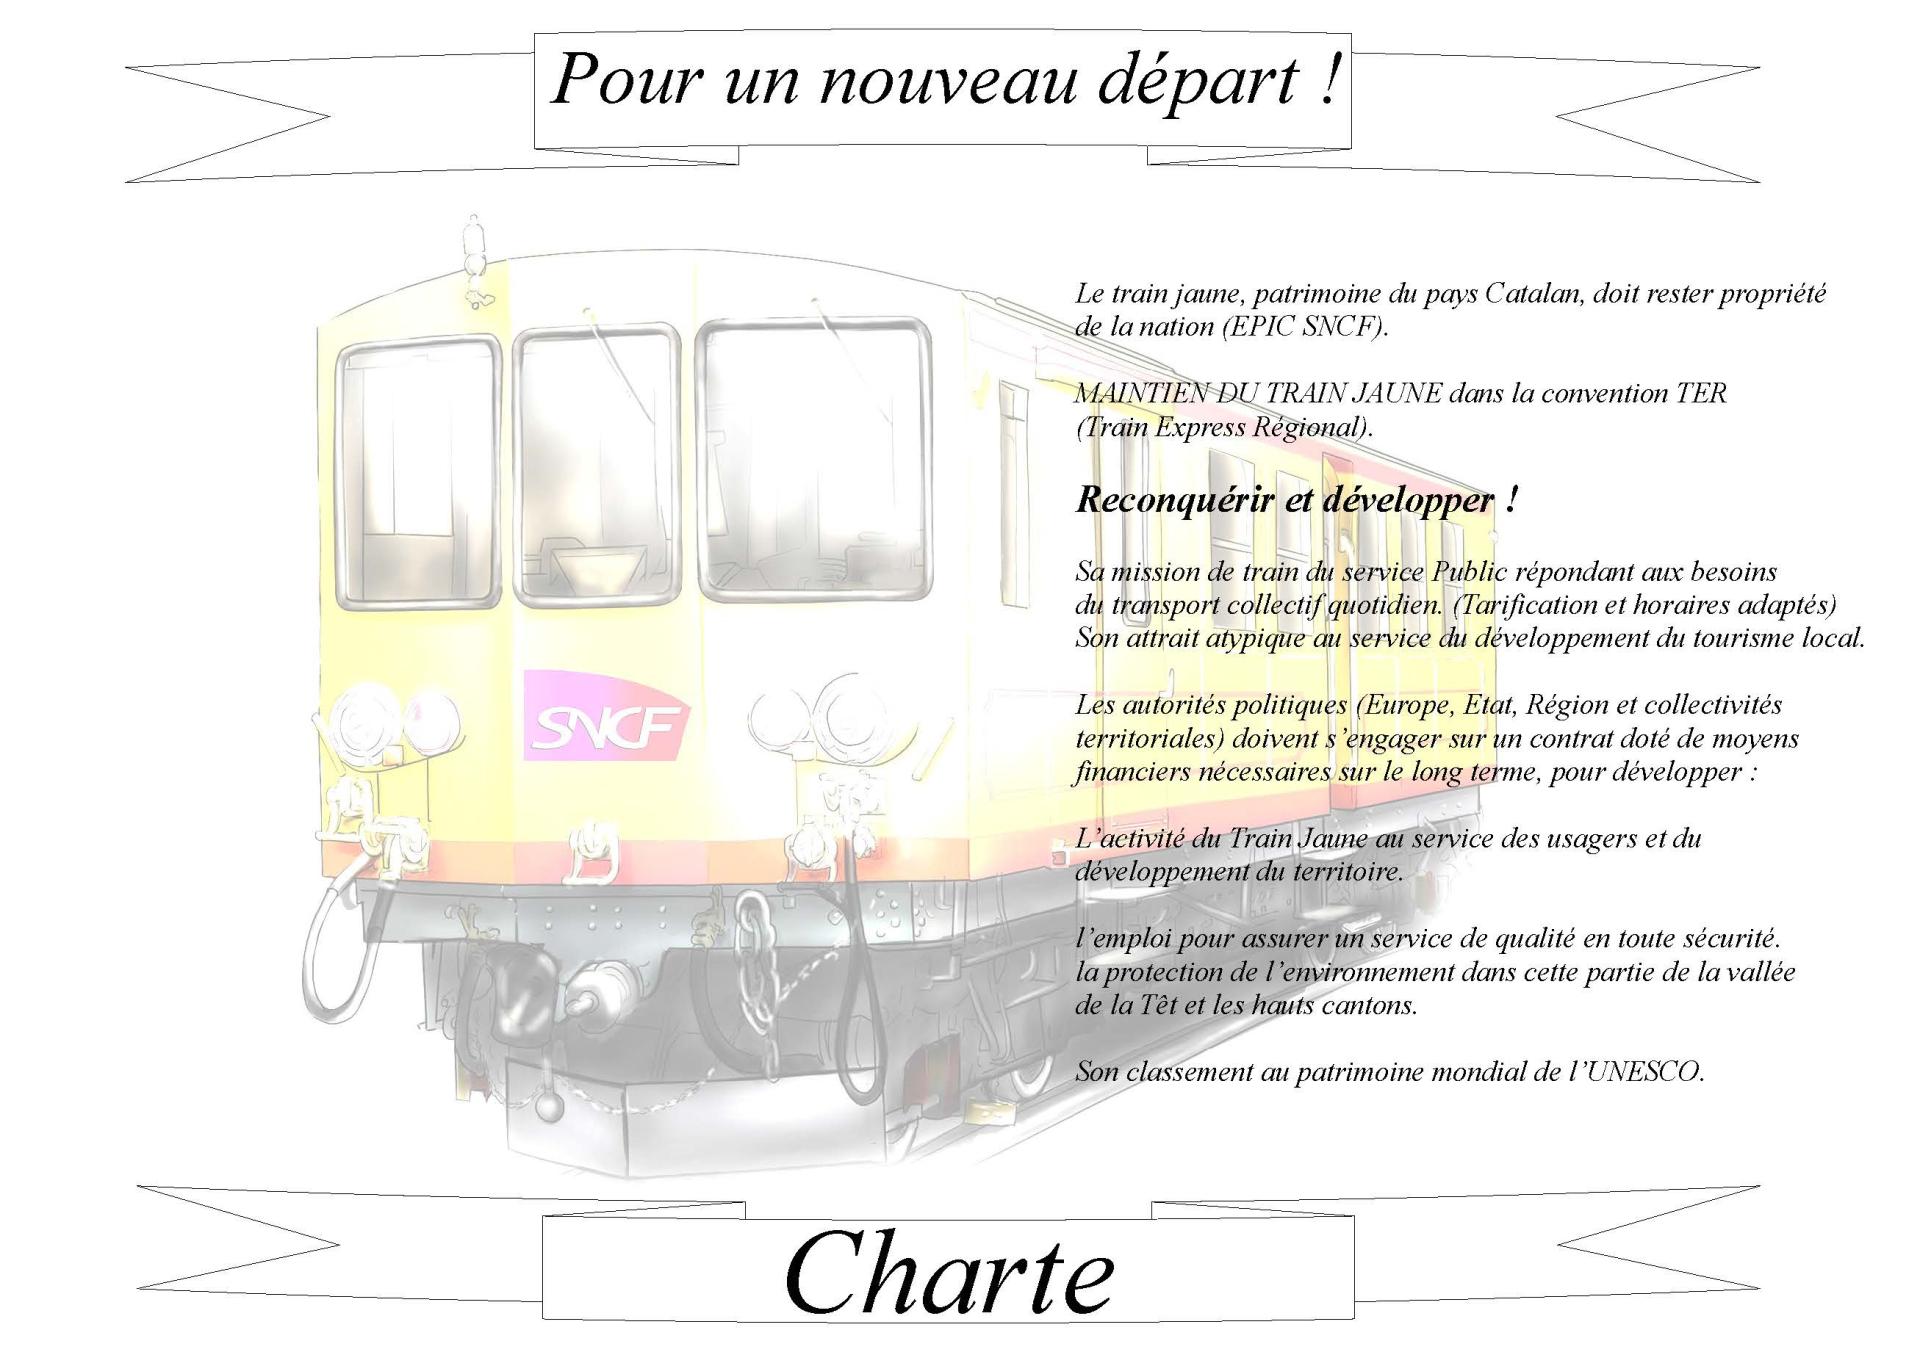 Charte cheminots train jaune 2015